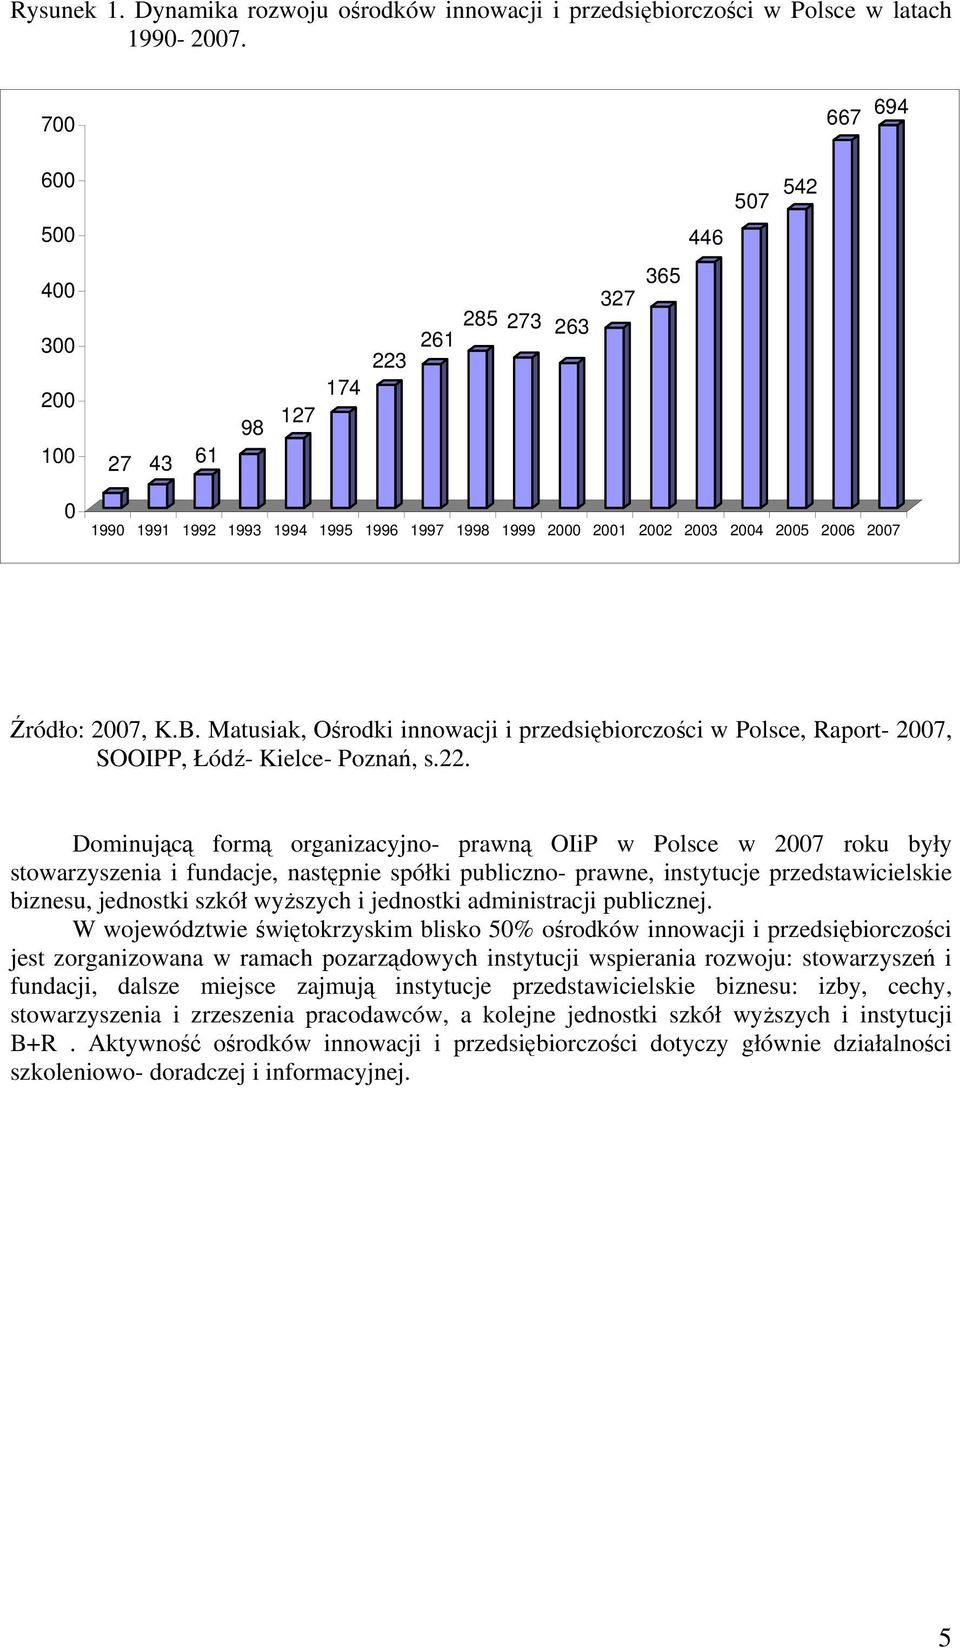 2007, K.B. Matusiak, Ośrodki innowacji i przedsiębiorczości w Polsce, Raport- 2007, SOOIPP, Łódź- Kielce- Poznań, s.22.